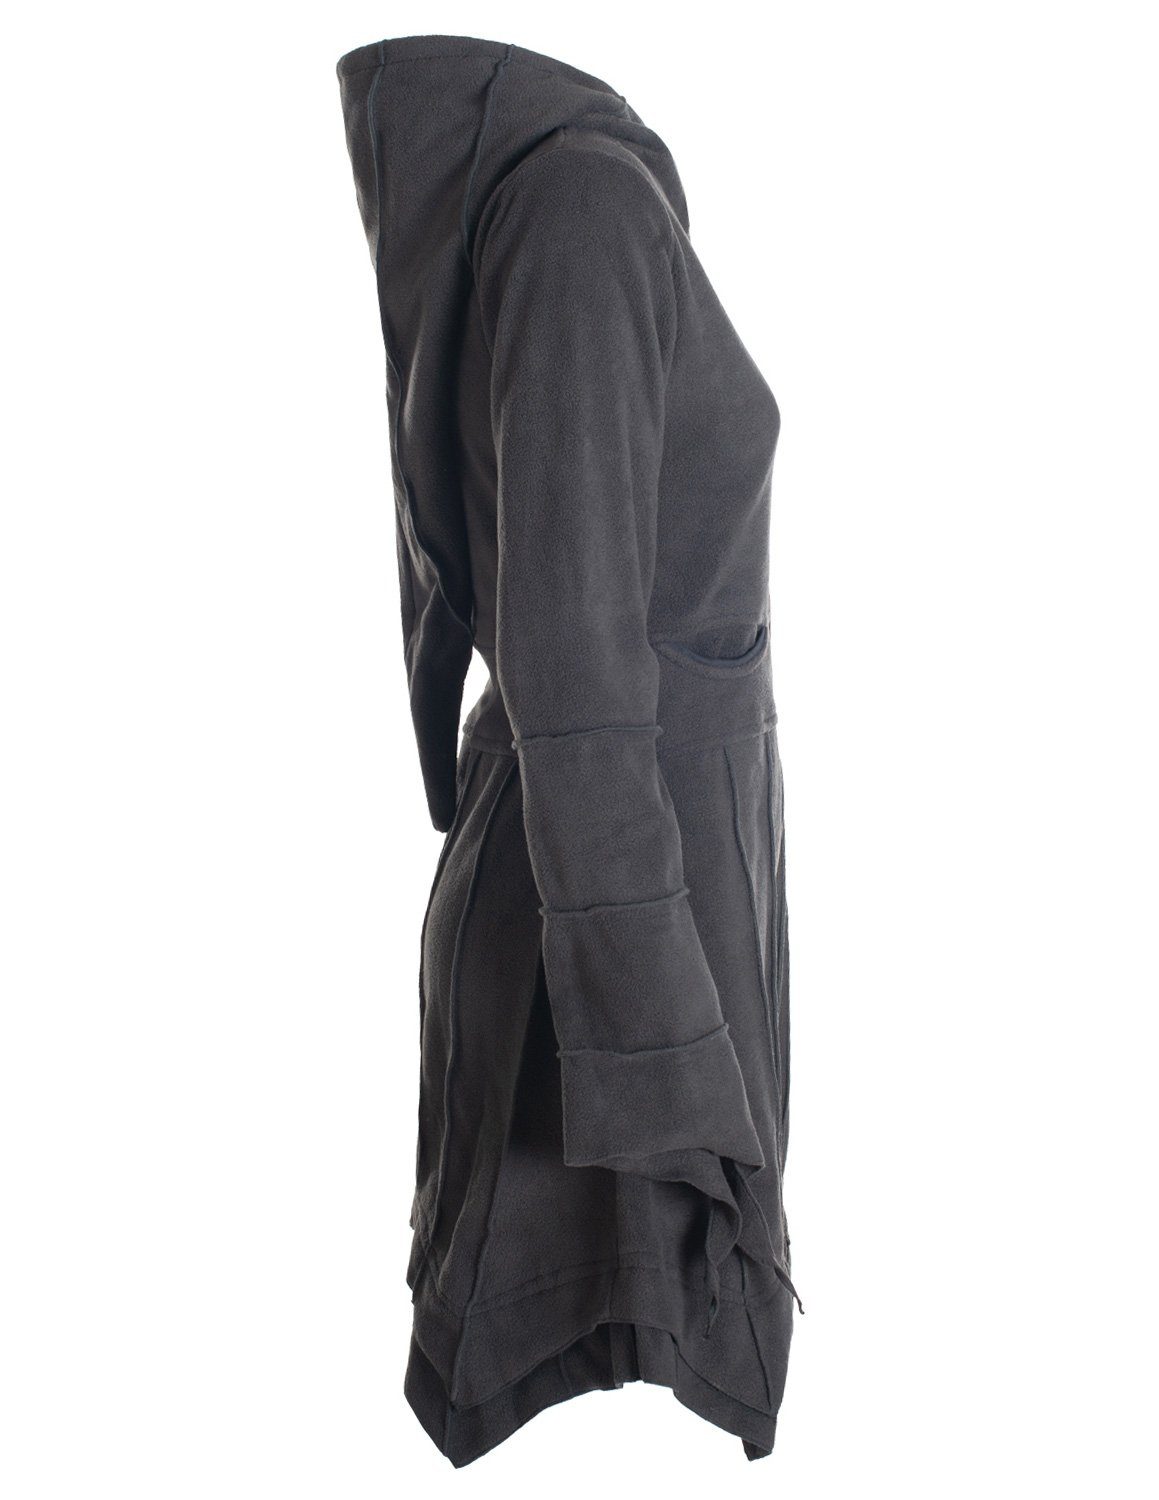 Cardigan Fleece Zipfelkapuzenjacke schwarz Boho Fleecemantel Ethno, Strickjacke Vishes Goa, Kurzmantel Gothik, Hooded Style